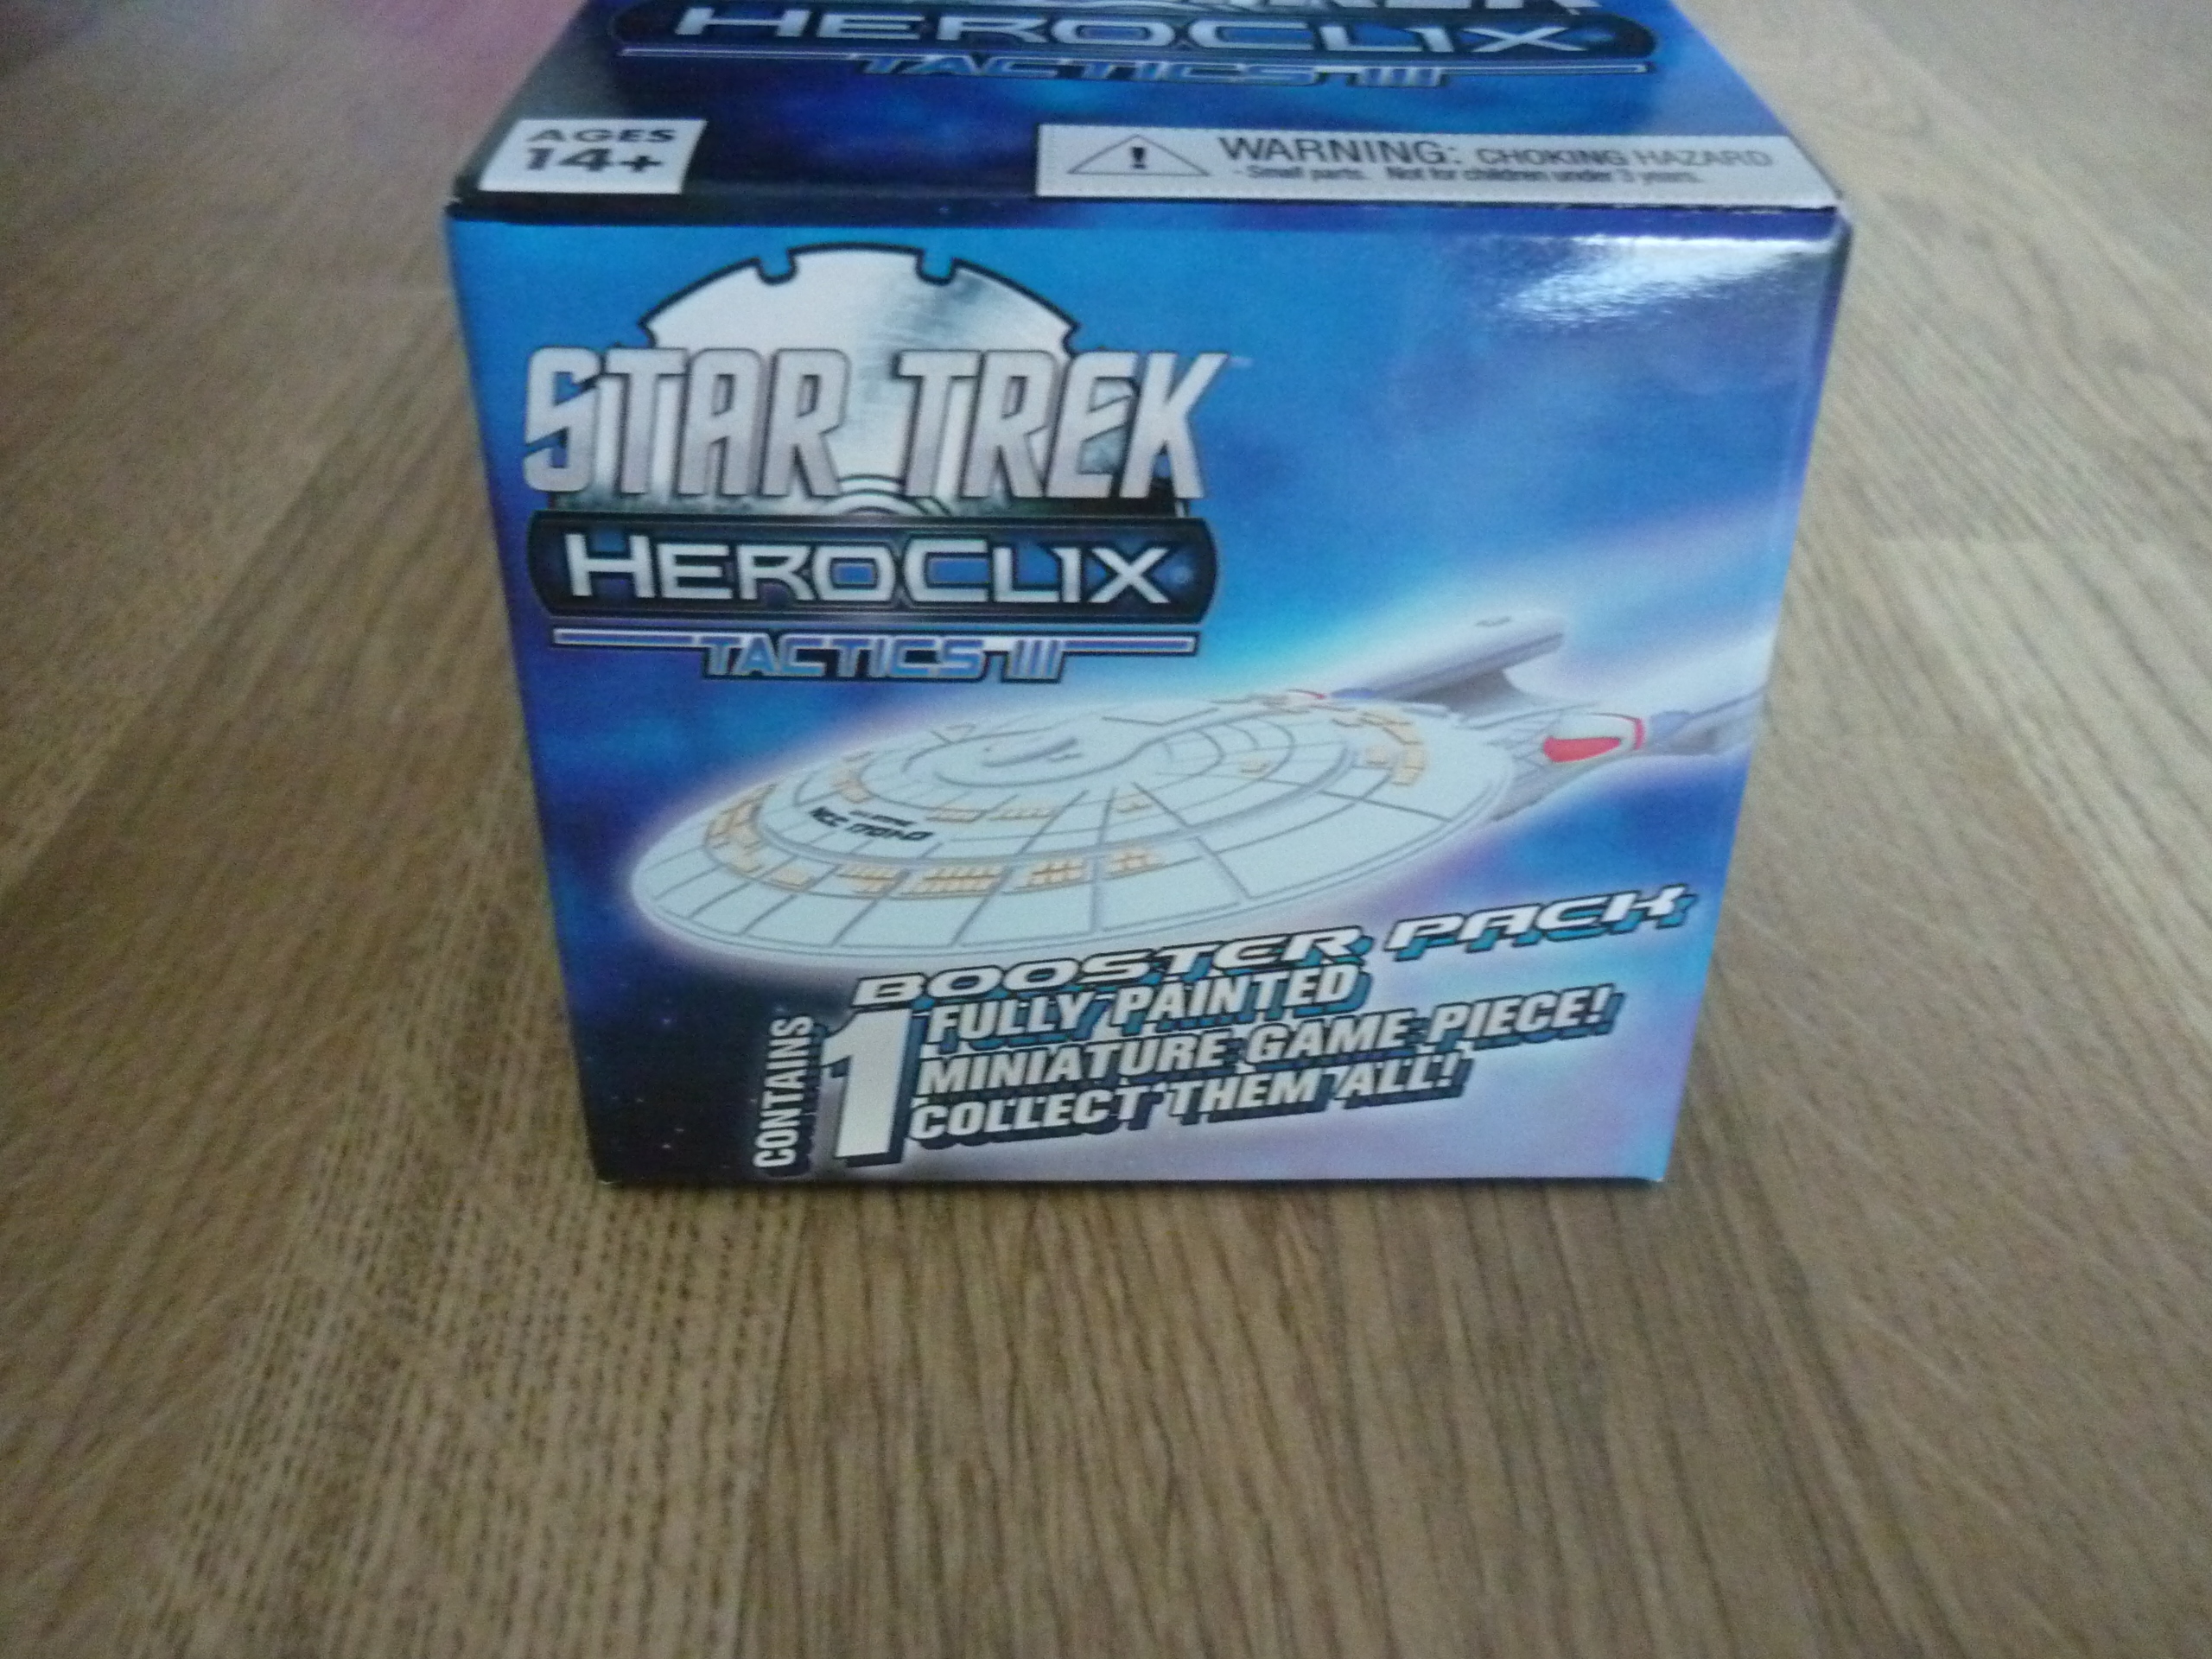 HEROCLIX - Star Trek Tactics III Booster Pack